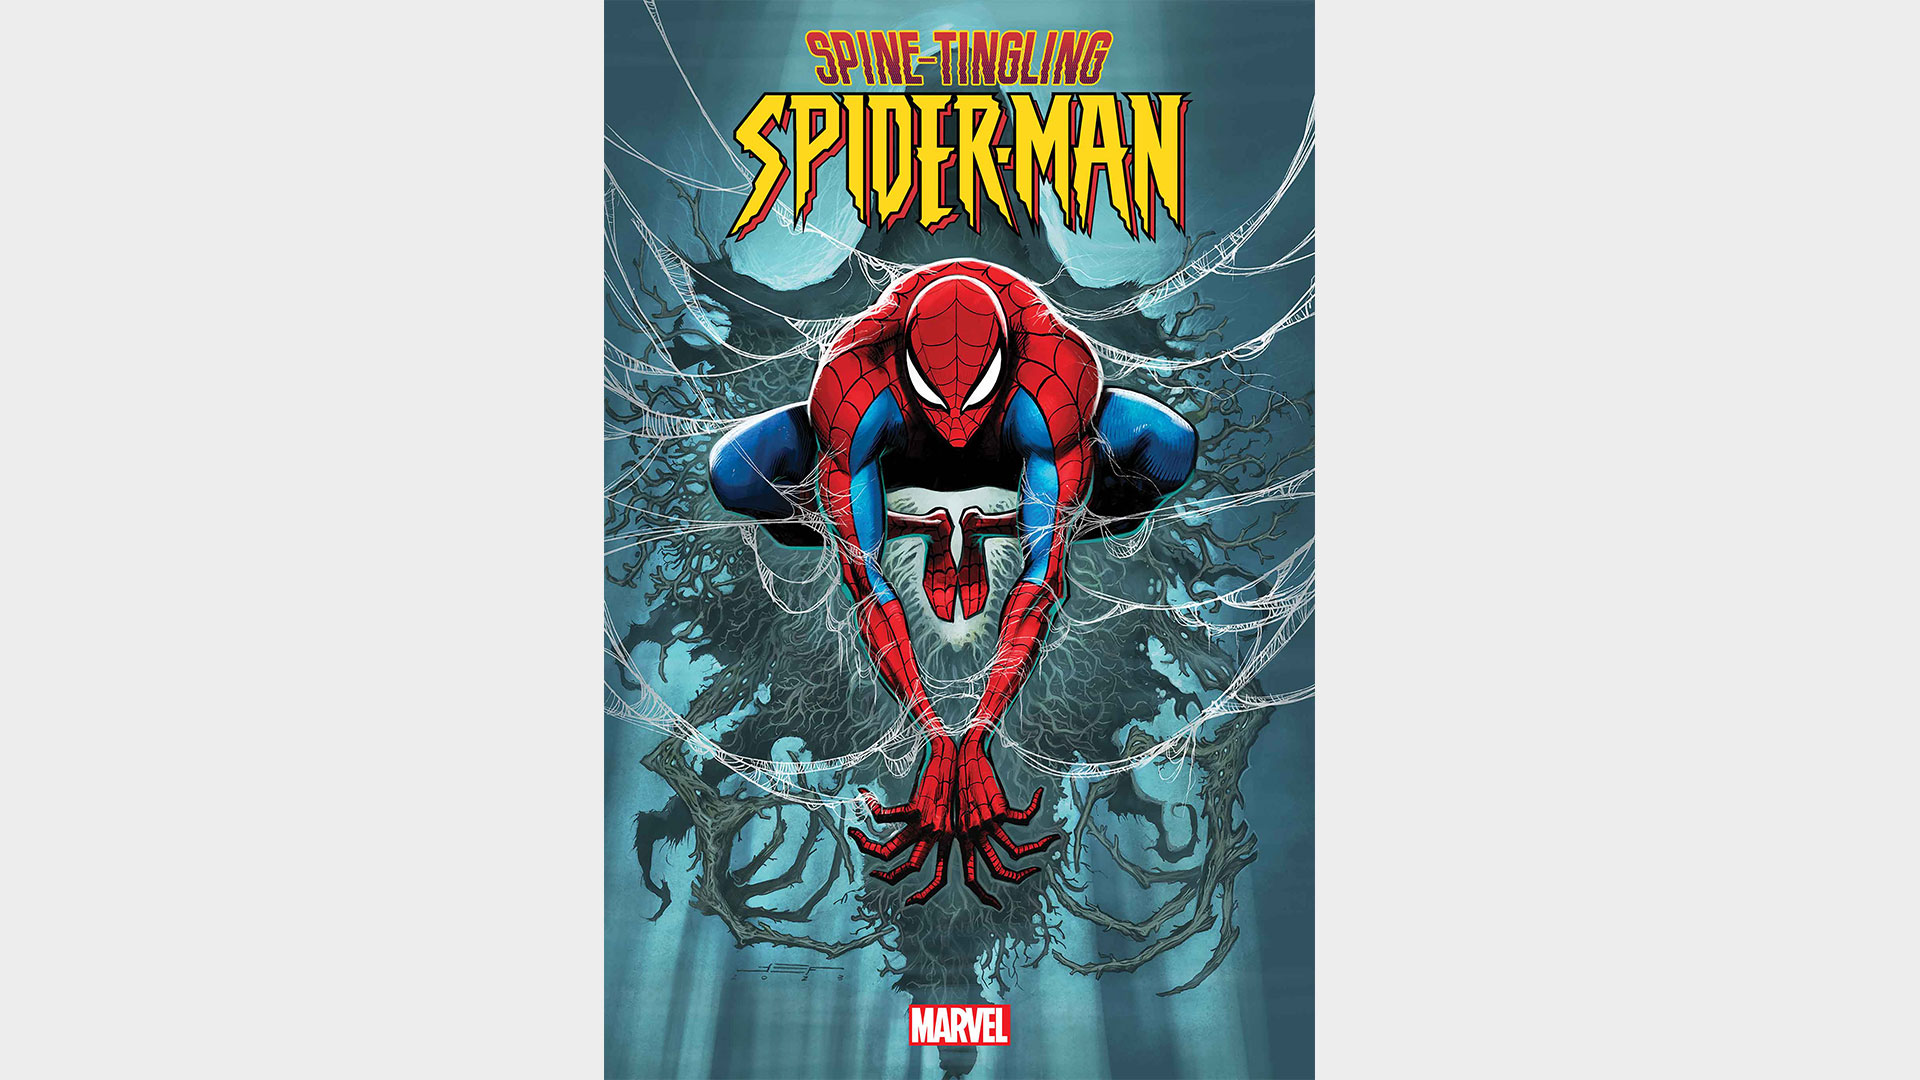 Couverture de Spider-Man #0 qui fait froid dans le dos